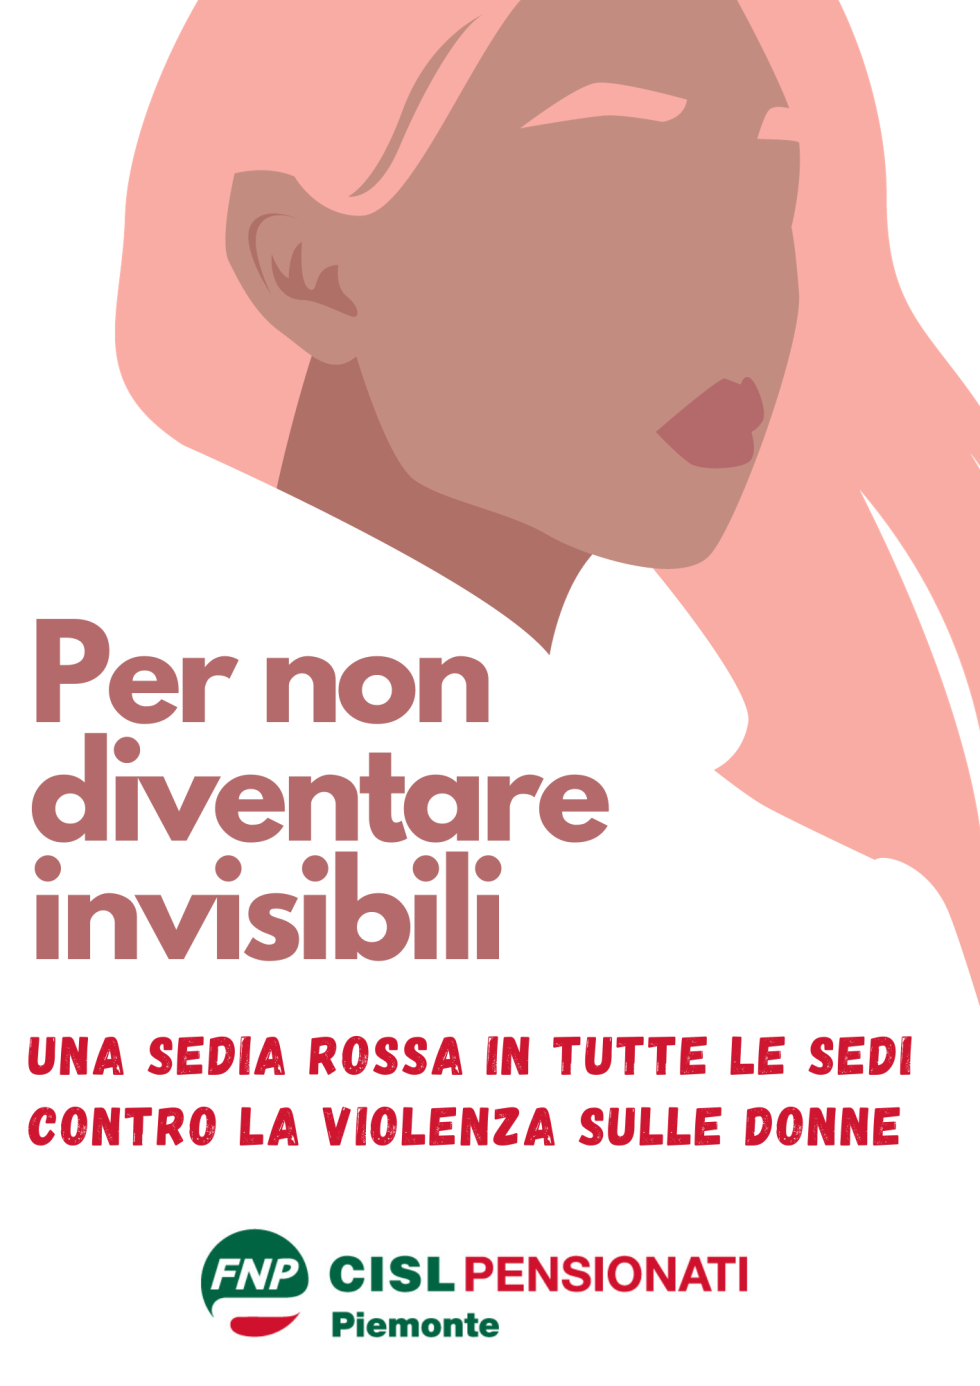 La FNP Piemonte rilancia il Progetto “Per non diventare invisibili” contro la violenza sulle donne